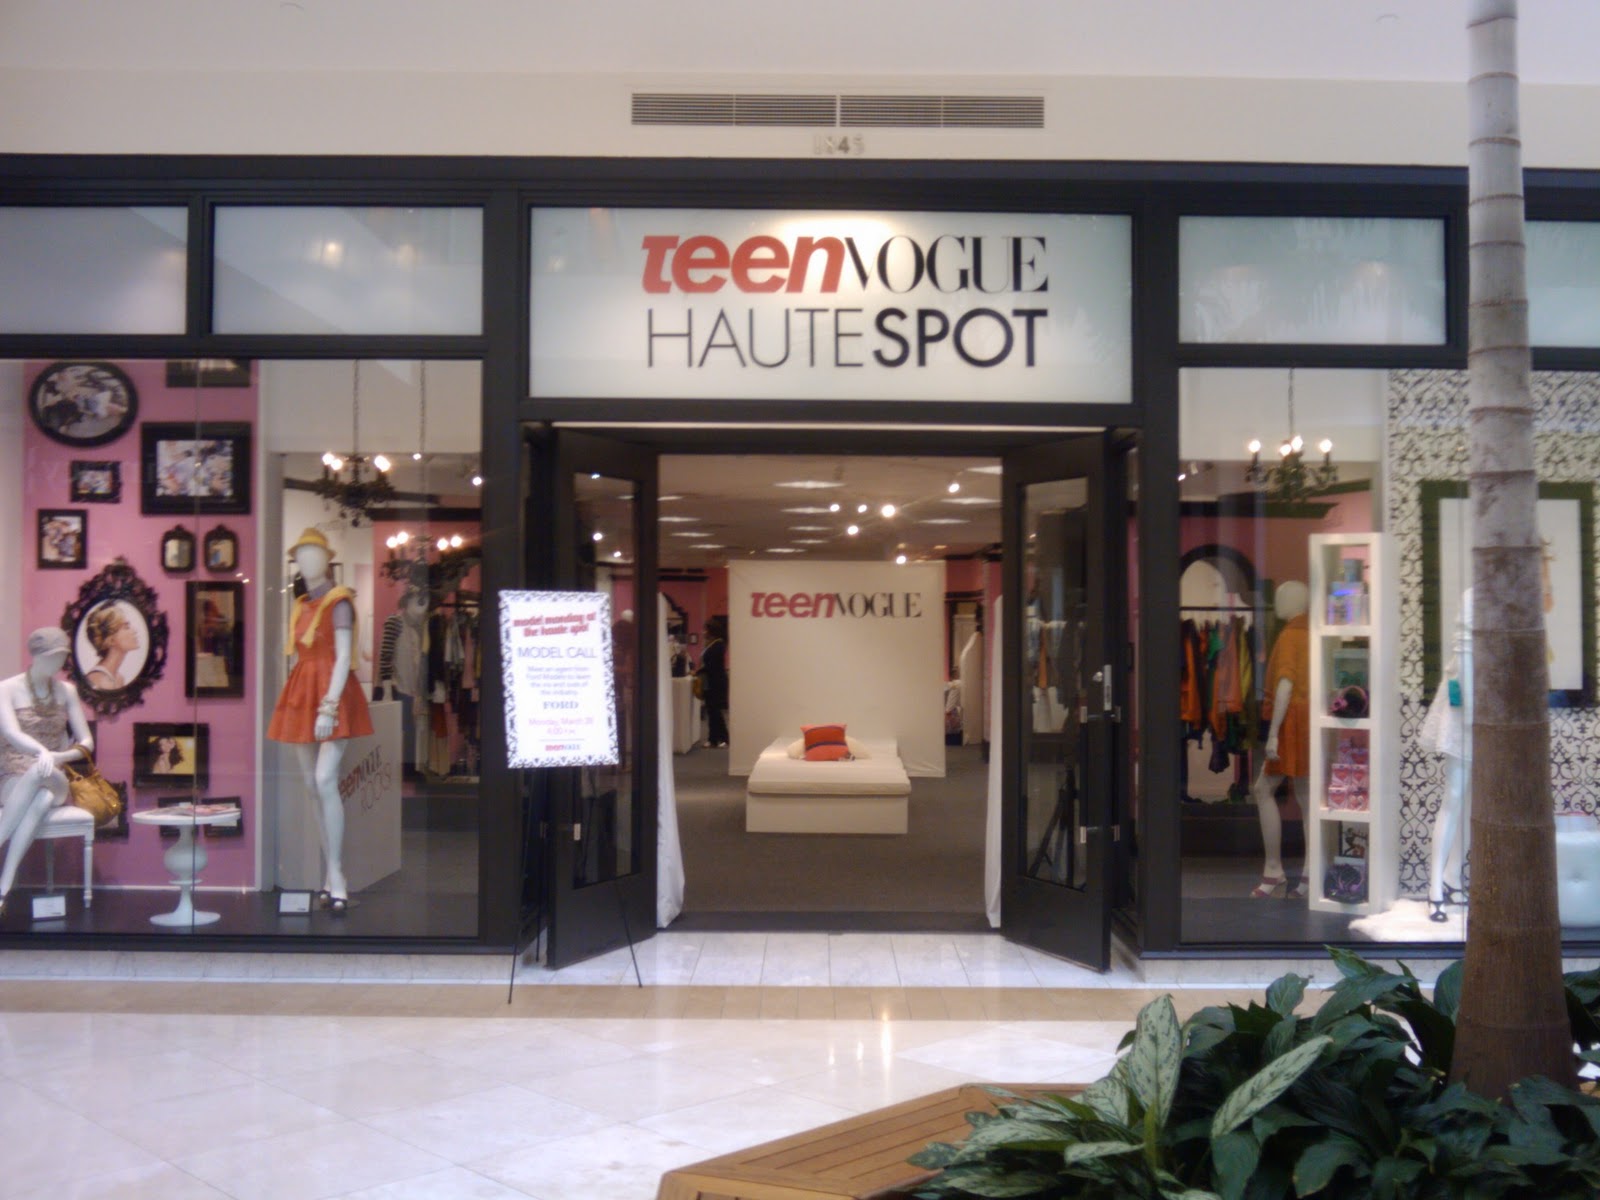 Mall Teen Vogue Haute Spot 86